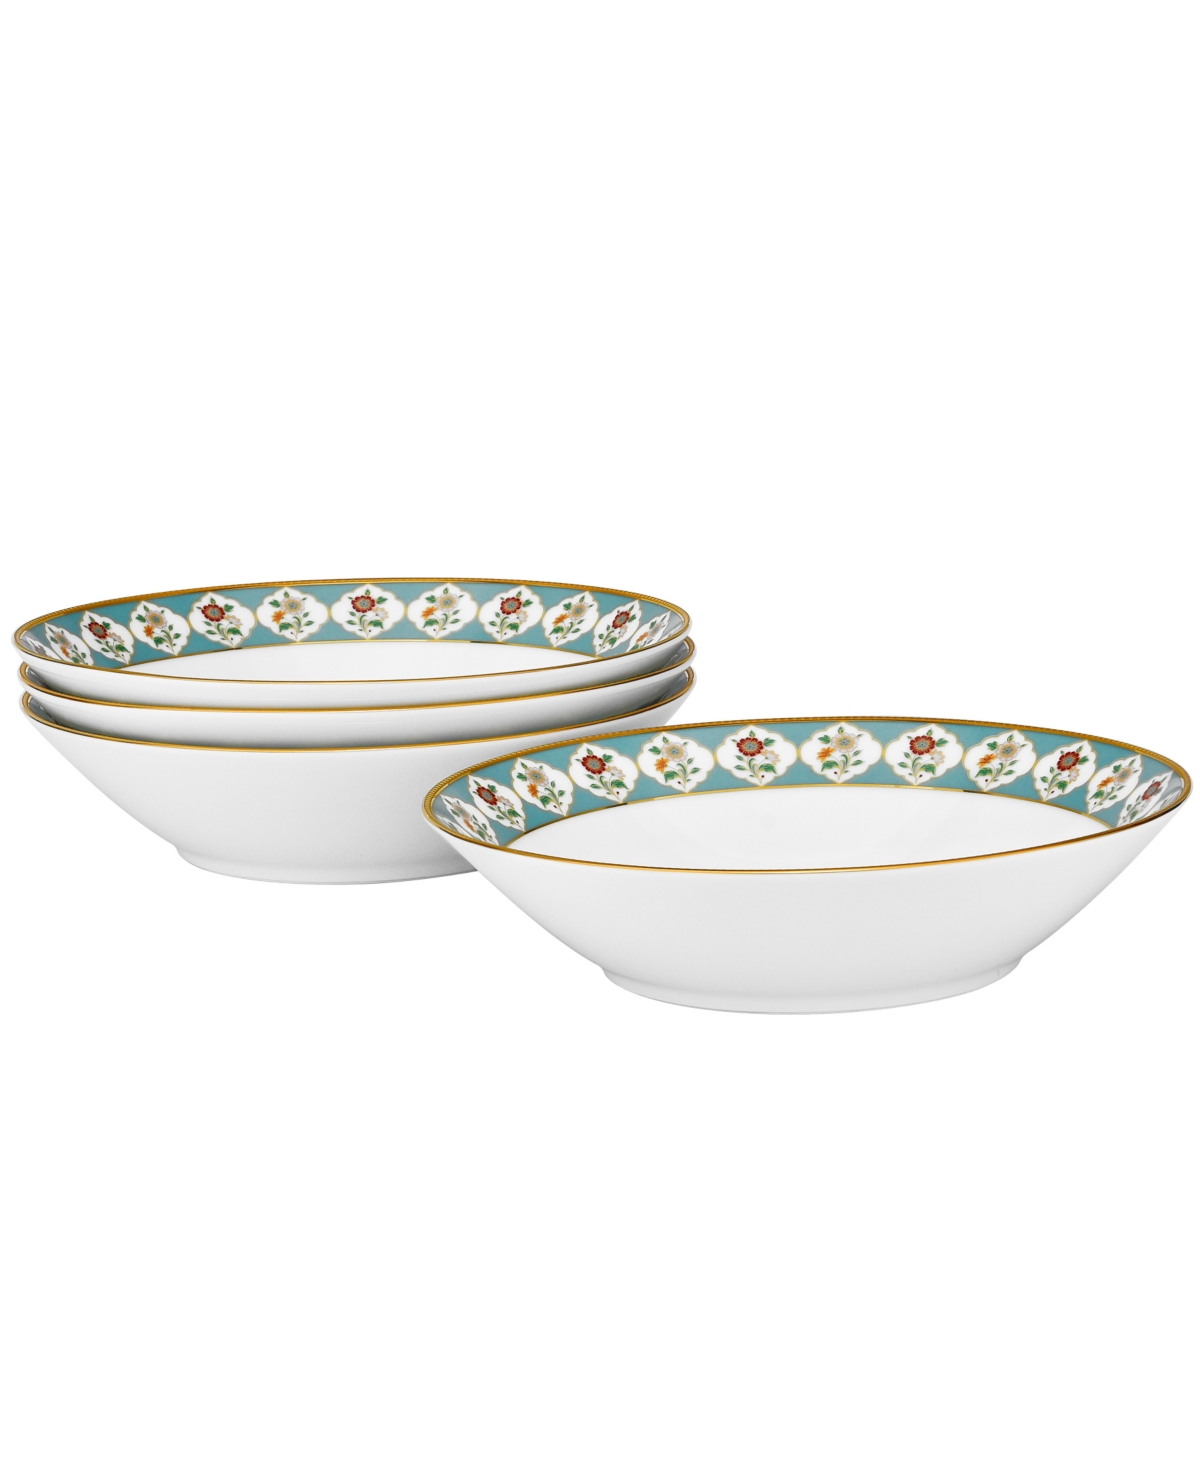 Noritake Lodi's Morning 20 oz Soup Bowls, Set Of 4 In White,blue,gold-tone Band